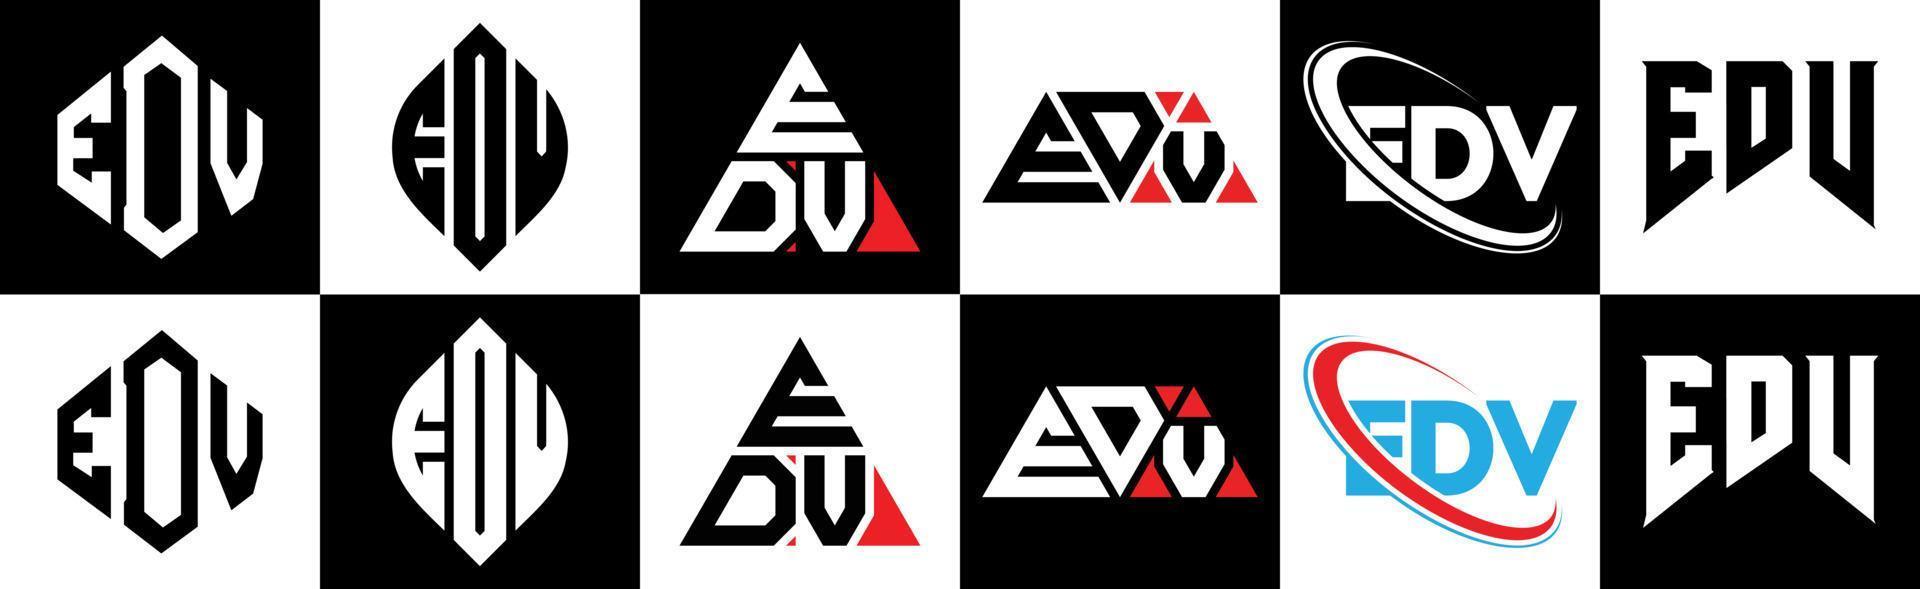 edv-Buchstaben-Logo-Design in sechs Stilen. edv-polygon, kreis, dreieck, sechseck, flacher und einfacher stil mit schwarz-weißem buchstabenlogo in einer zeichenfläche. edv minimalistisches und klassisches Logo vektor